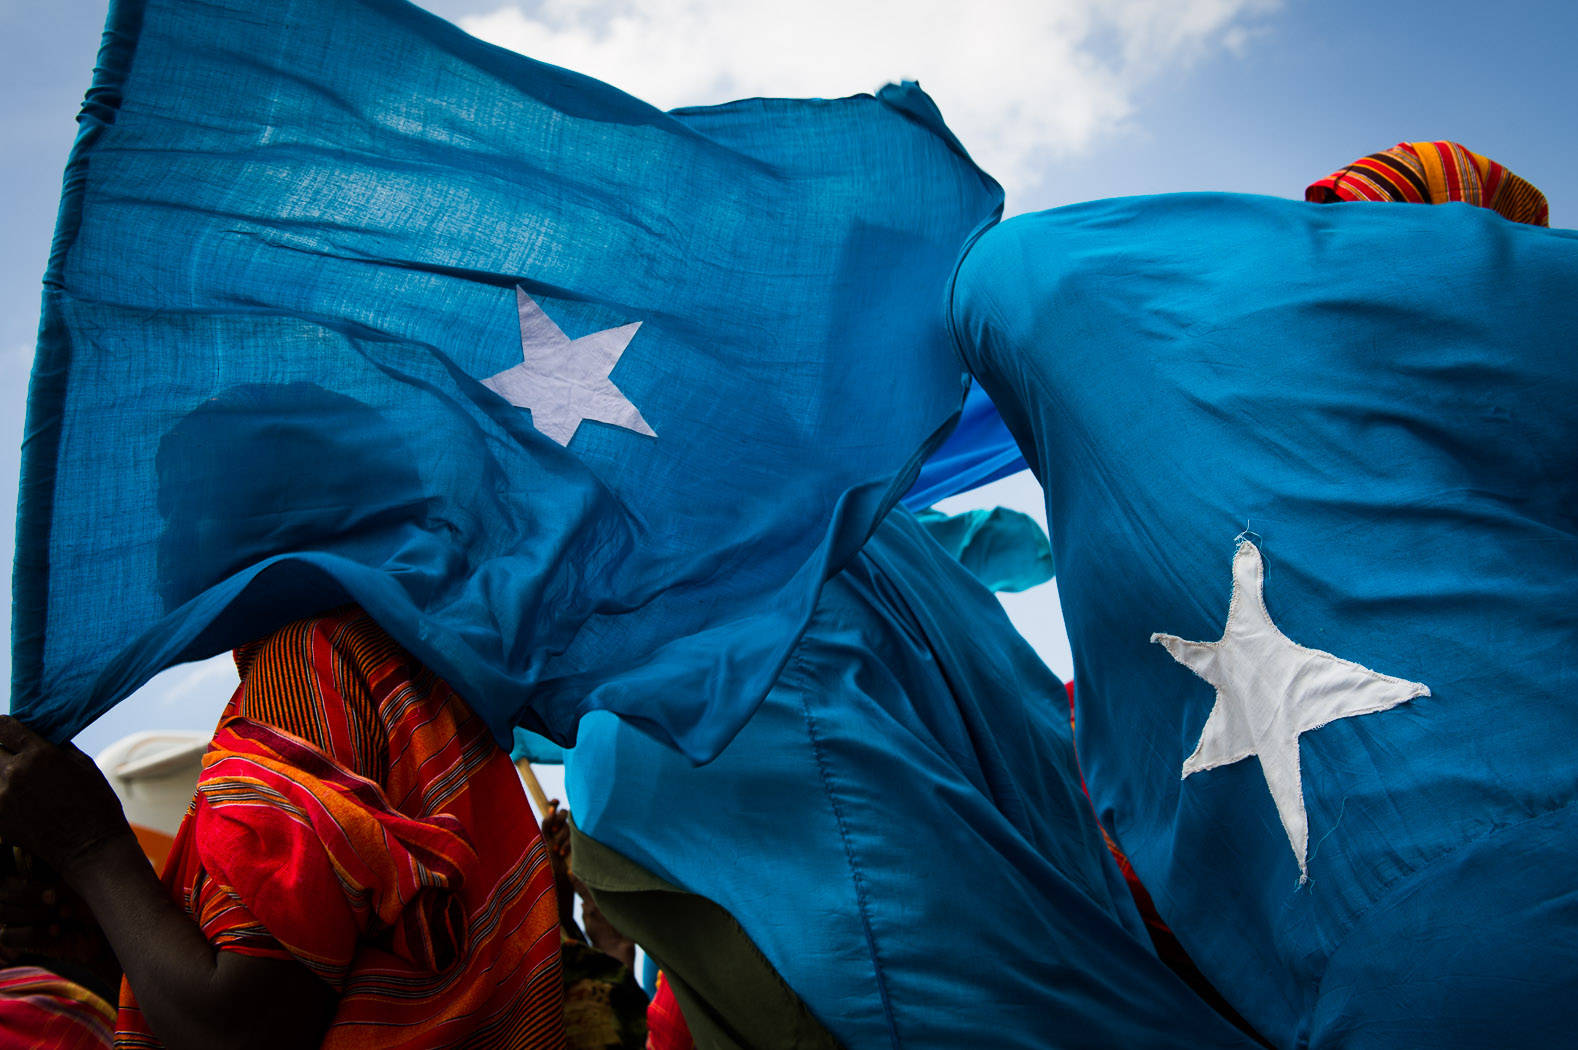 Somaliaflaggen In Der Menge Wallpaper